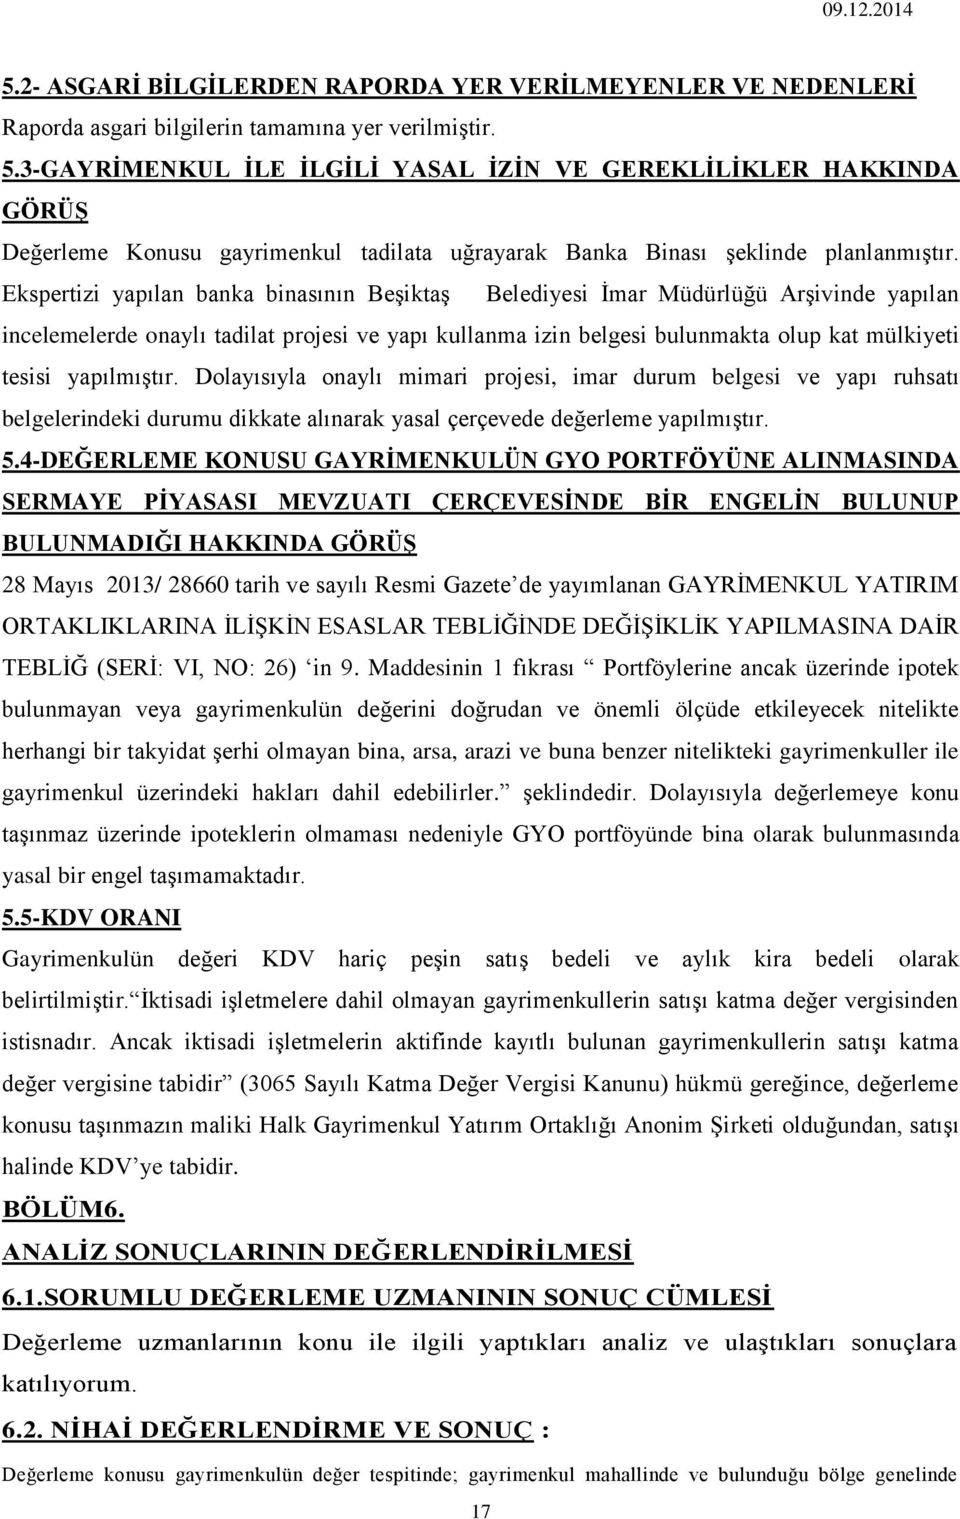 Ekspertizi yapılan banka binasının Beşiktaş Belediyesi İmar Müdürlüğü Arşivinde yapılan incelemelerde onaylı tadilat projesi ve yapı kullanma izin belgesi bulunmakta olup kat mülkiyeti tesisi